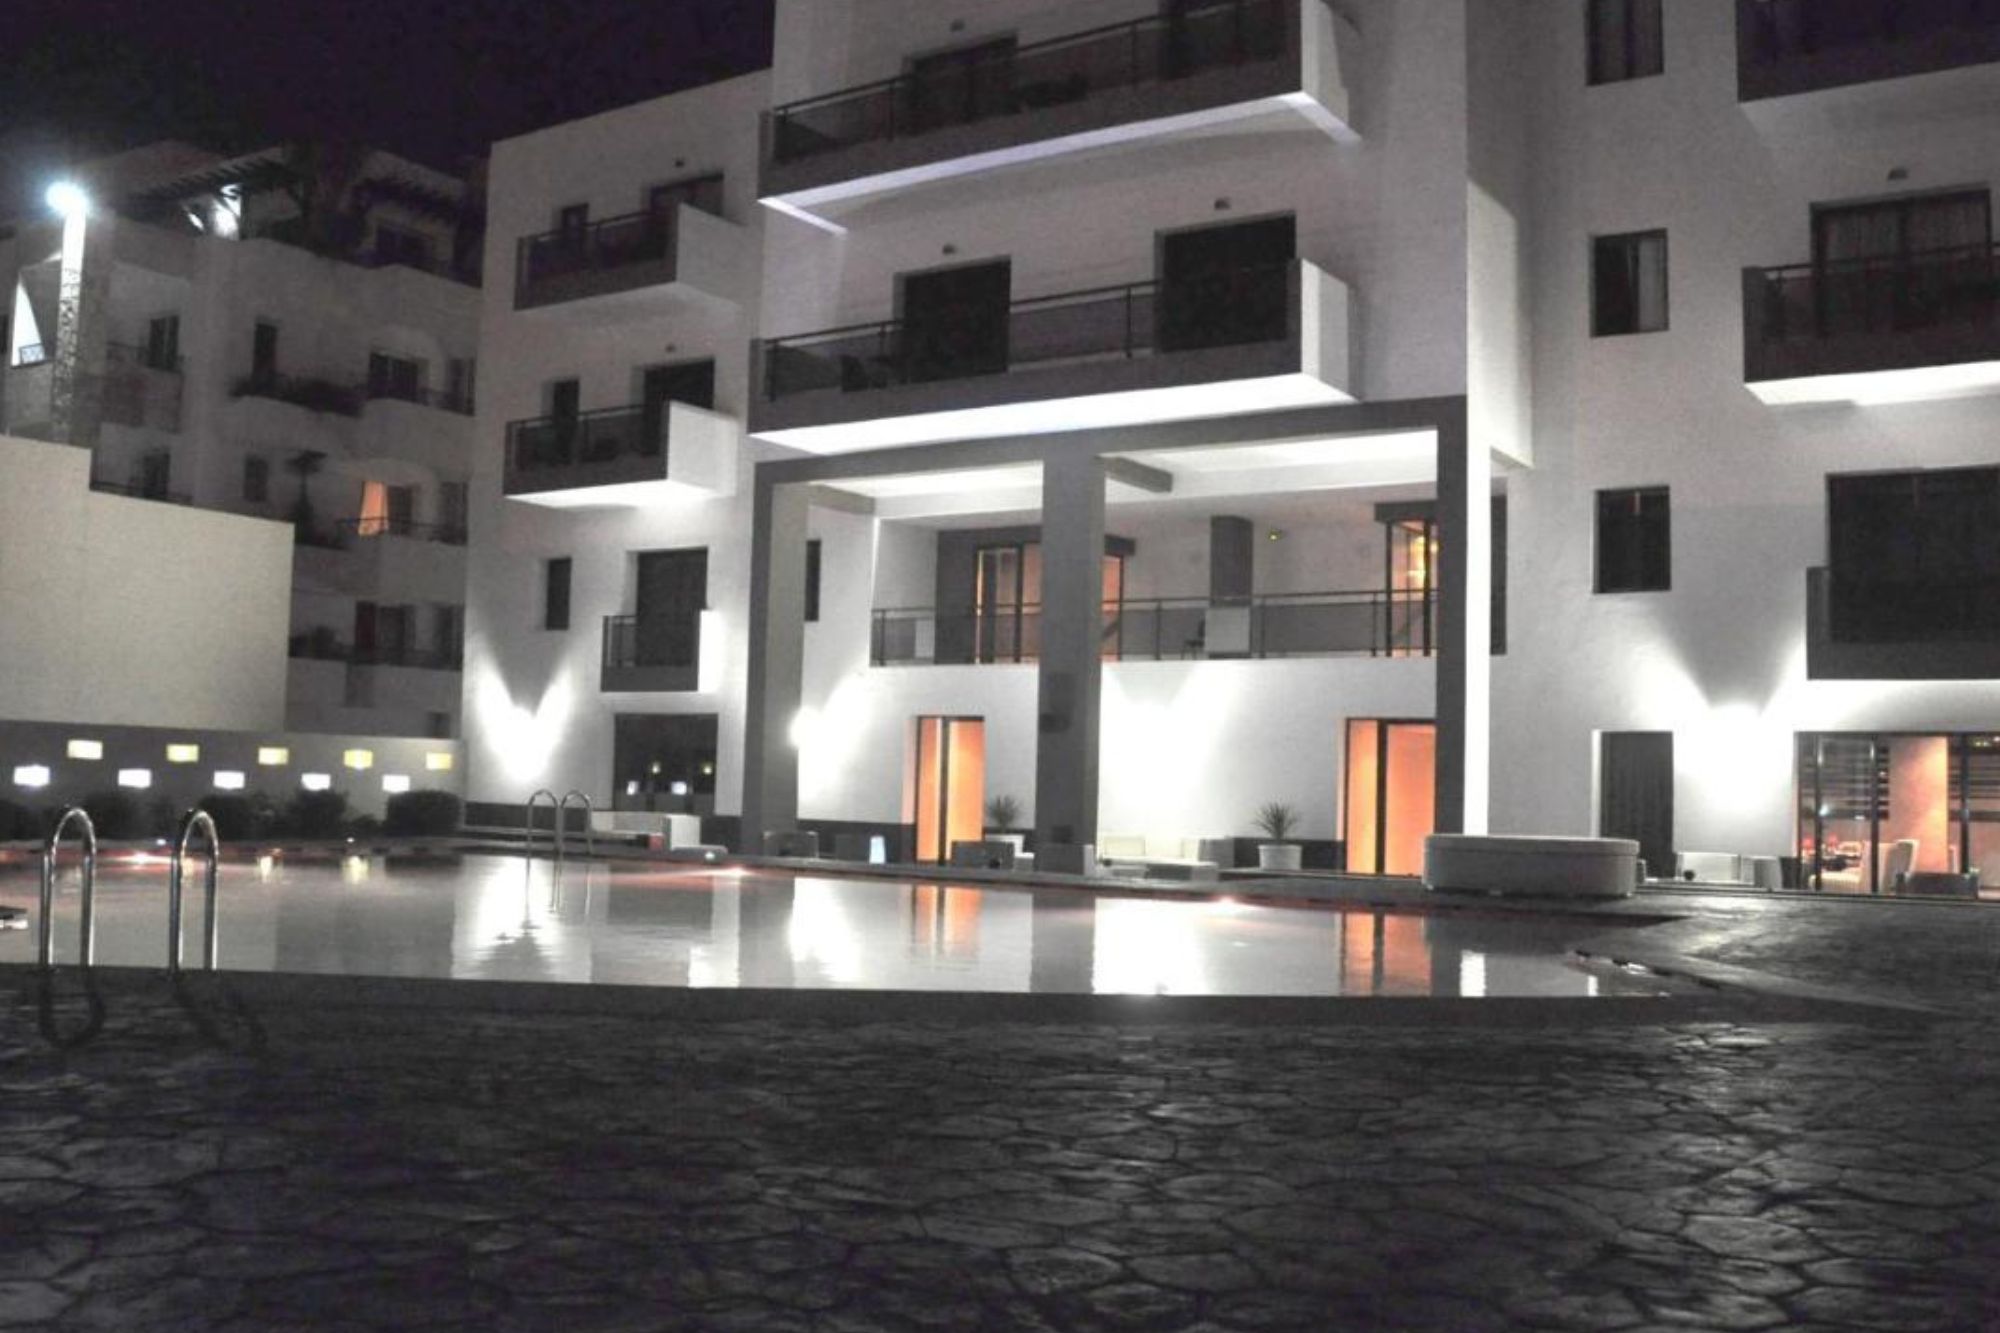 Suite Hotel Boutique . Hotel en bord de mer Agadir (1)